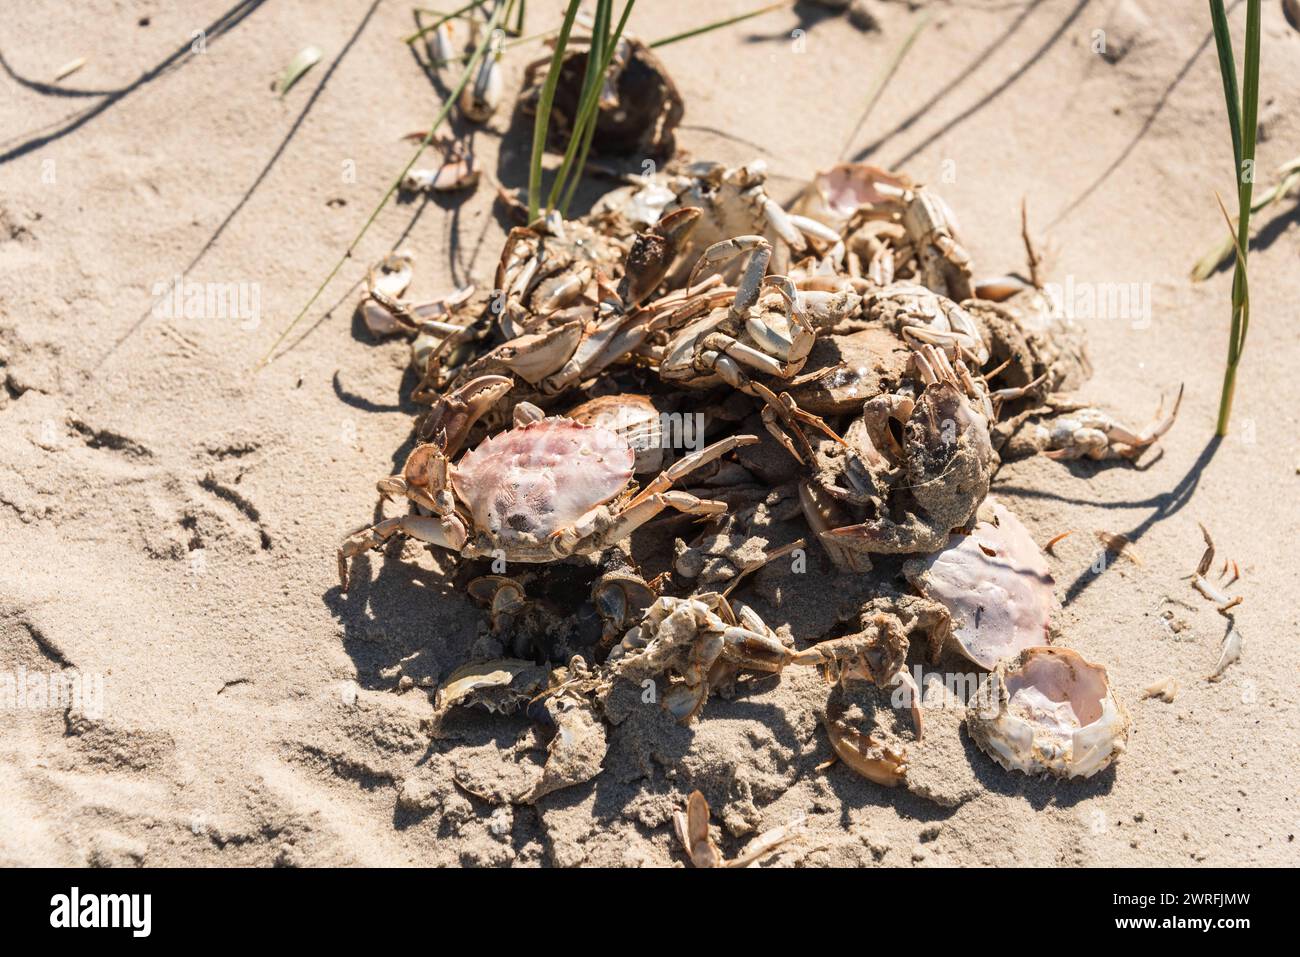 Strandkrabben wechseln ihre Panzer beim Wachstum *** Shore crabs change their shells as they grow Stock Photo